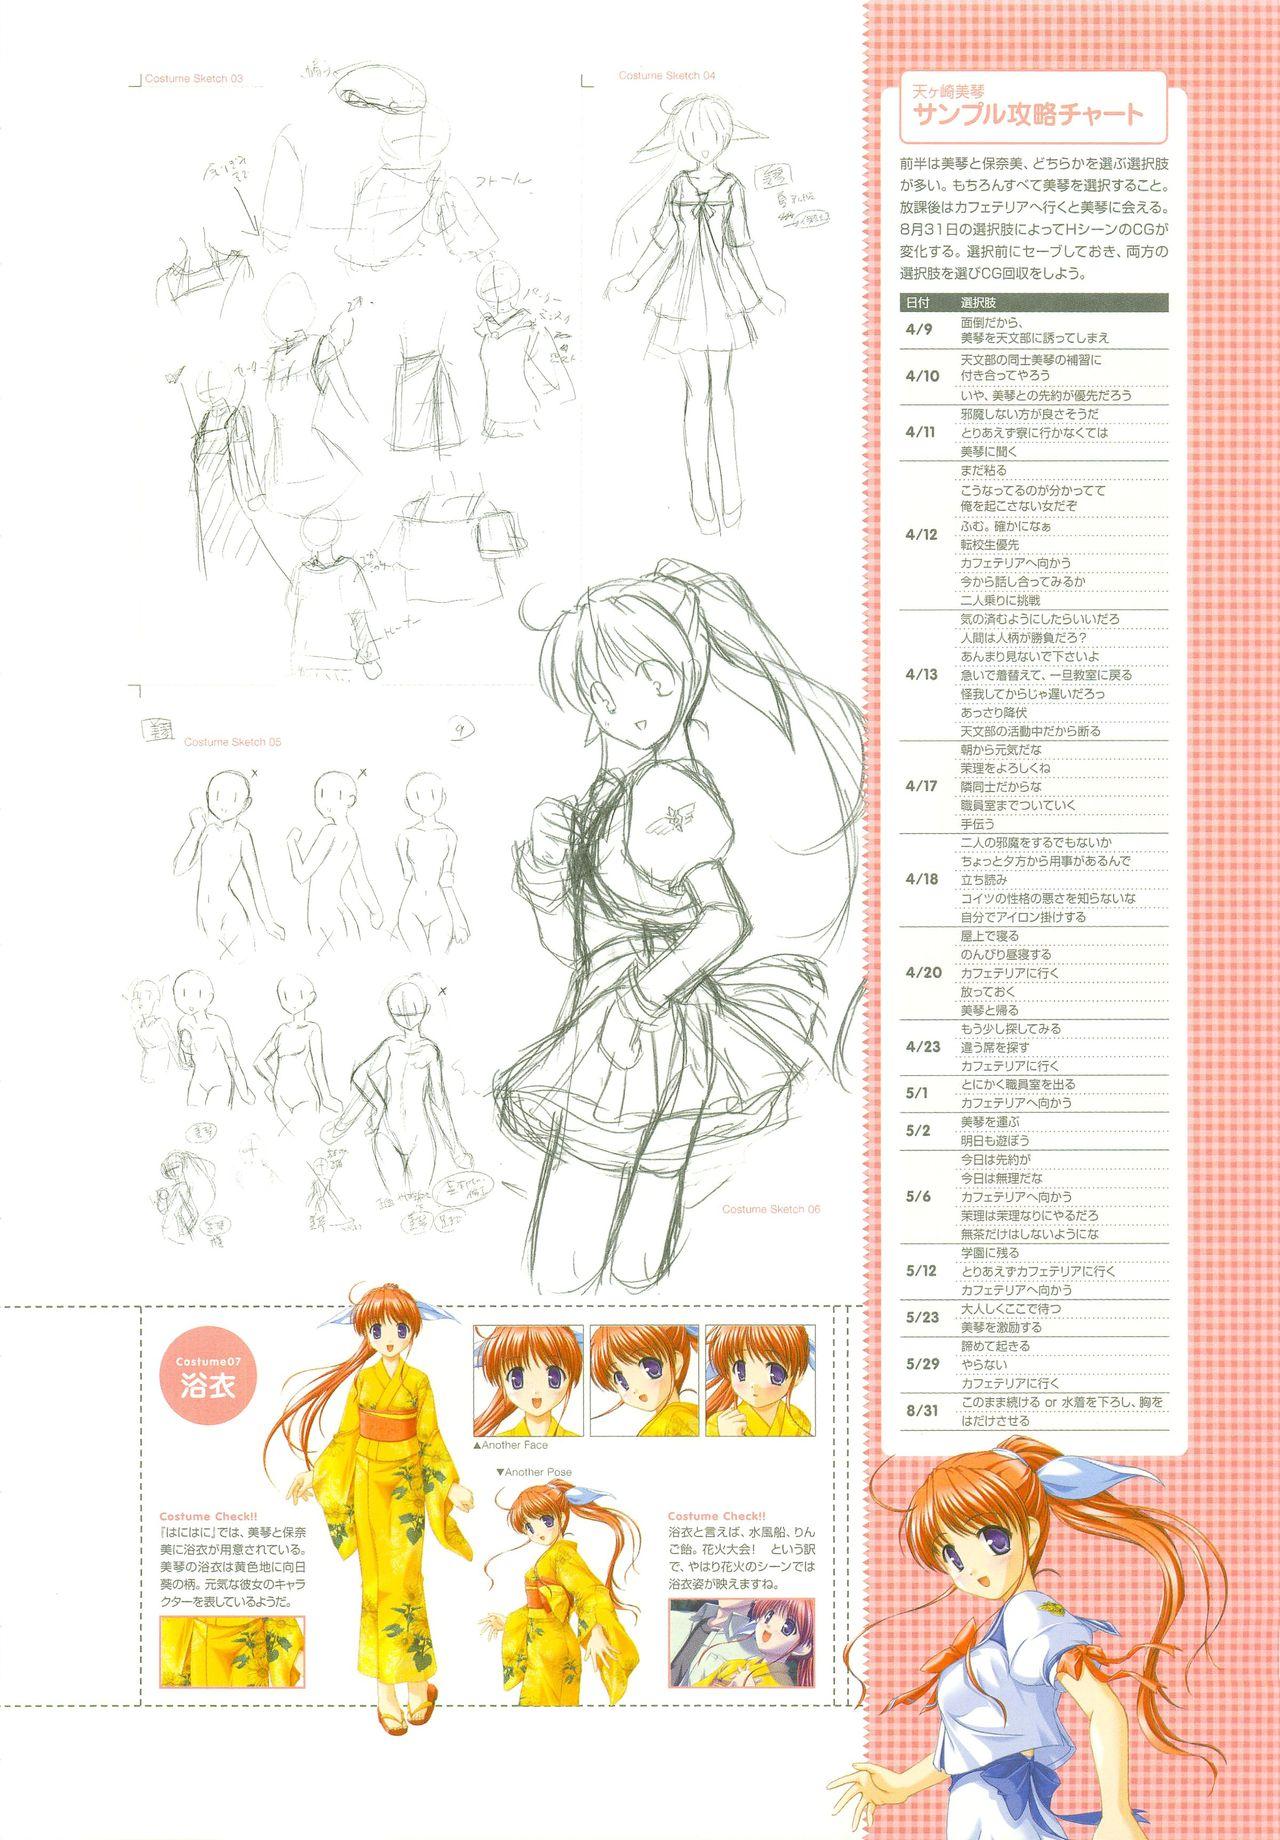 Tsuki wa Higashi ni Hi wa Nishi ni - Operation Sanctuary - Visual Fan Book Shokai Ban 14